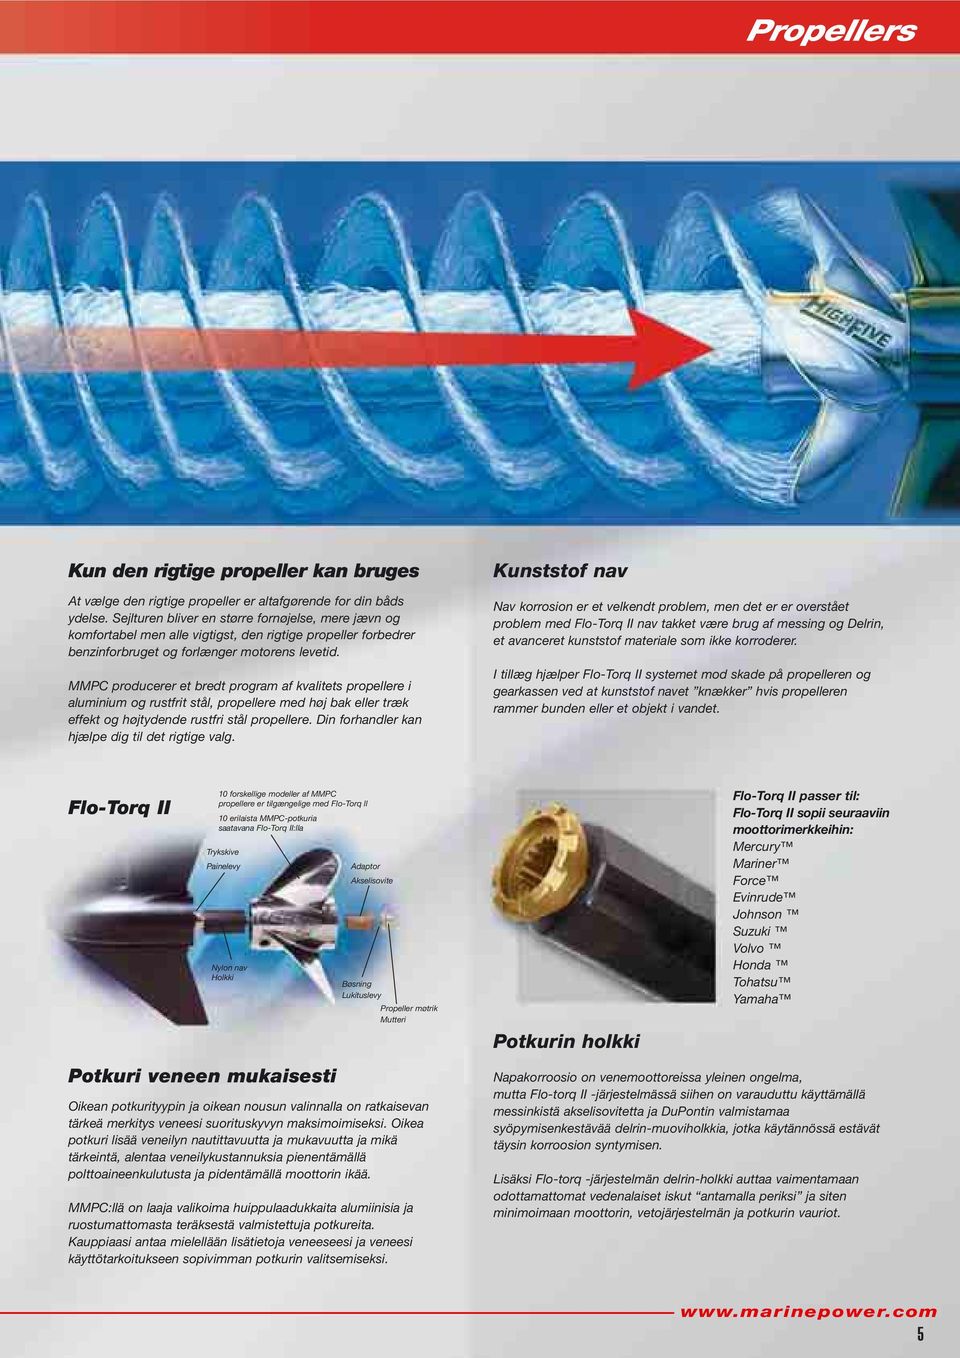 MMPC producerer et bredt program af kvalitets propellere i aluminium og rustfrit stål, propellere med høj bak eller træk effekt og højtydende rustfri stål propellere.